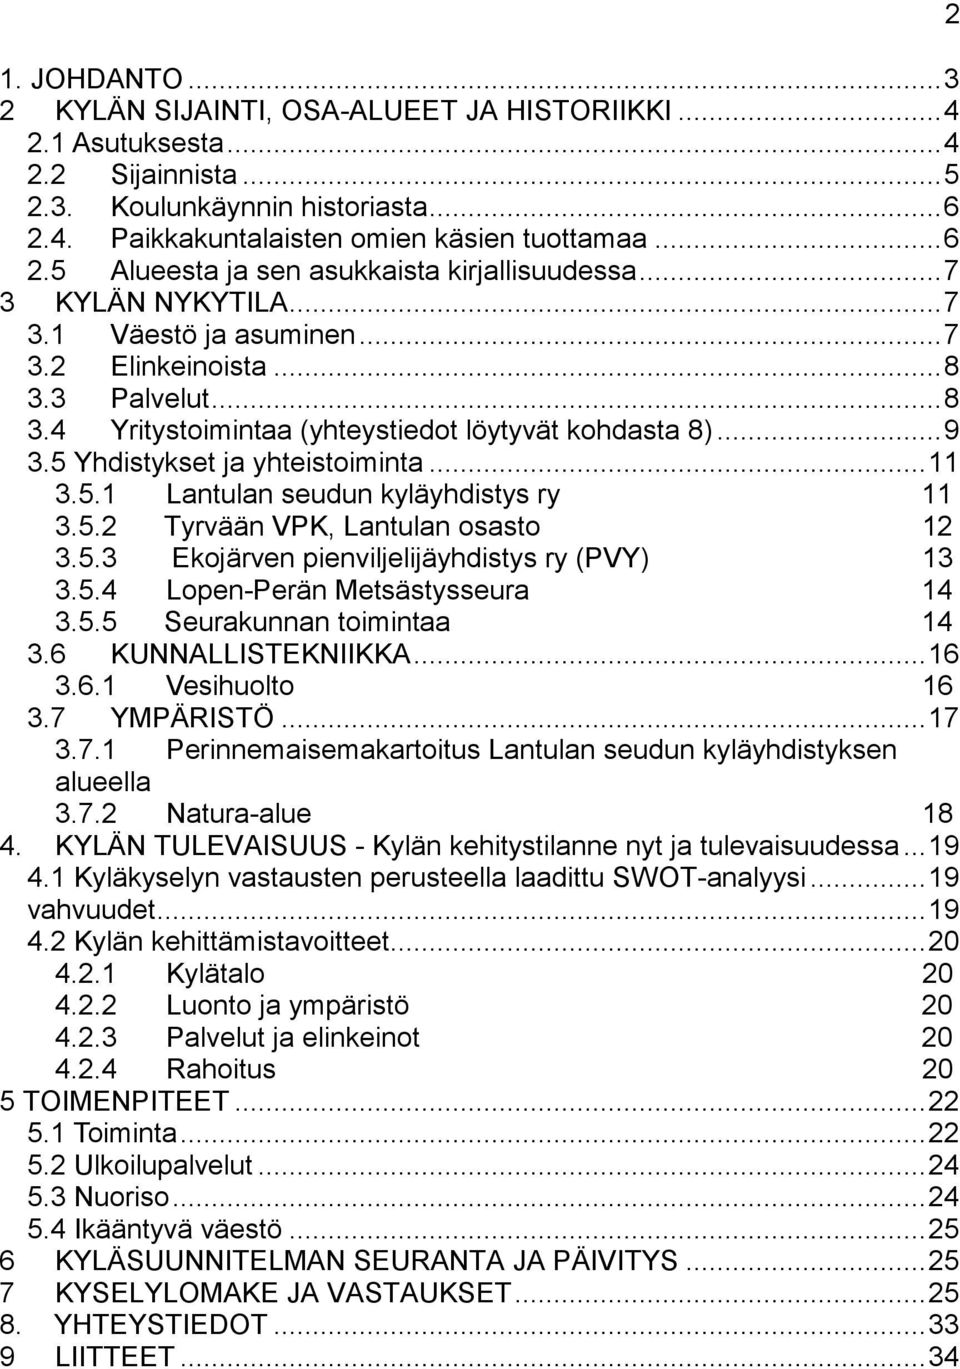 5.2 Tyrvään VPK, Lantulan osasto 12 3.5.3 Ekojärven pienviljelijäyhdistys ry (PVY) 13 3.5.4 Lopen-Perän Metsästysseura 14 3.5.5 Seurakunnan toimintaa 14 3.6 KUNNALLISTEKNIIKKA...16 3.6.1 Vesihuolto 16 3.